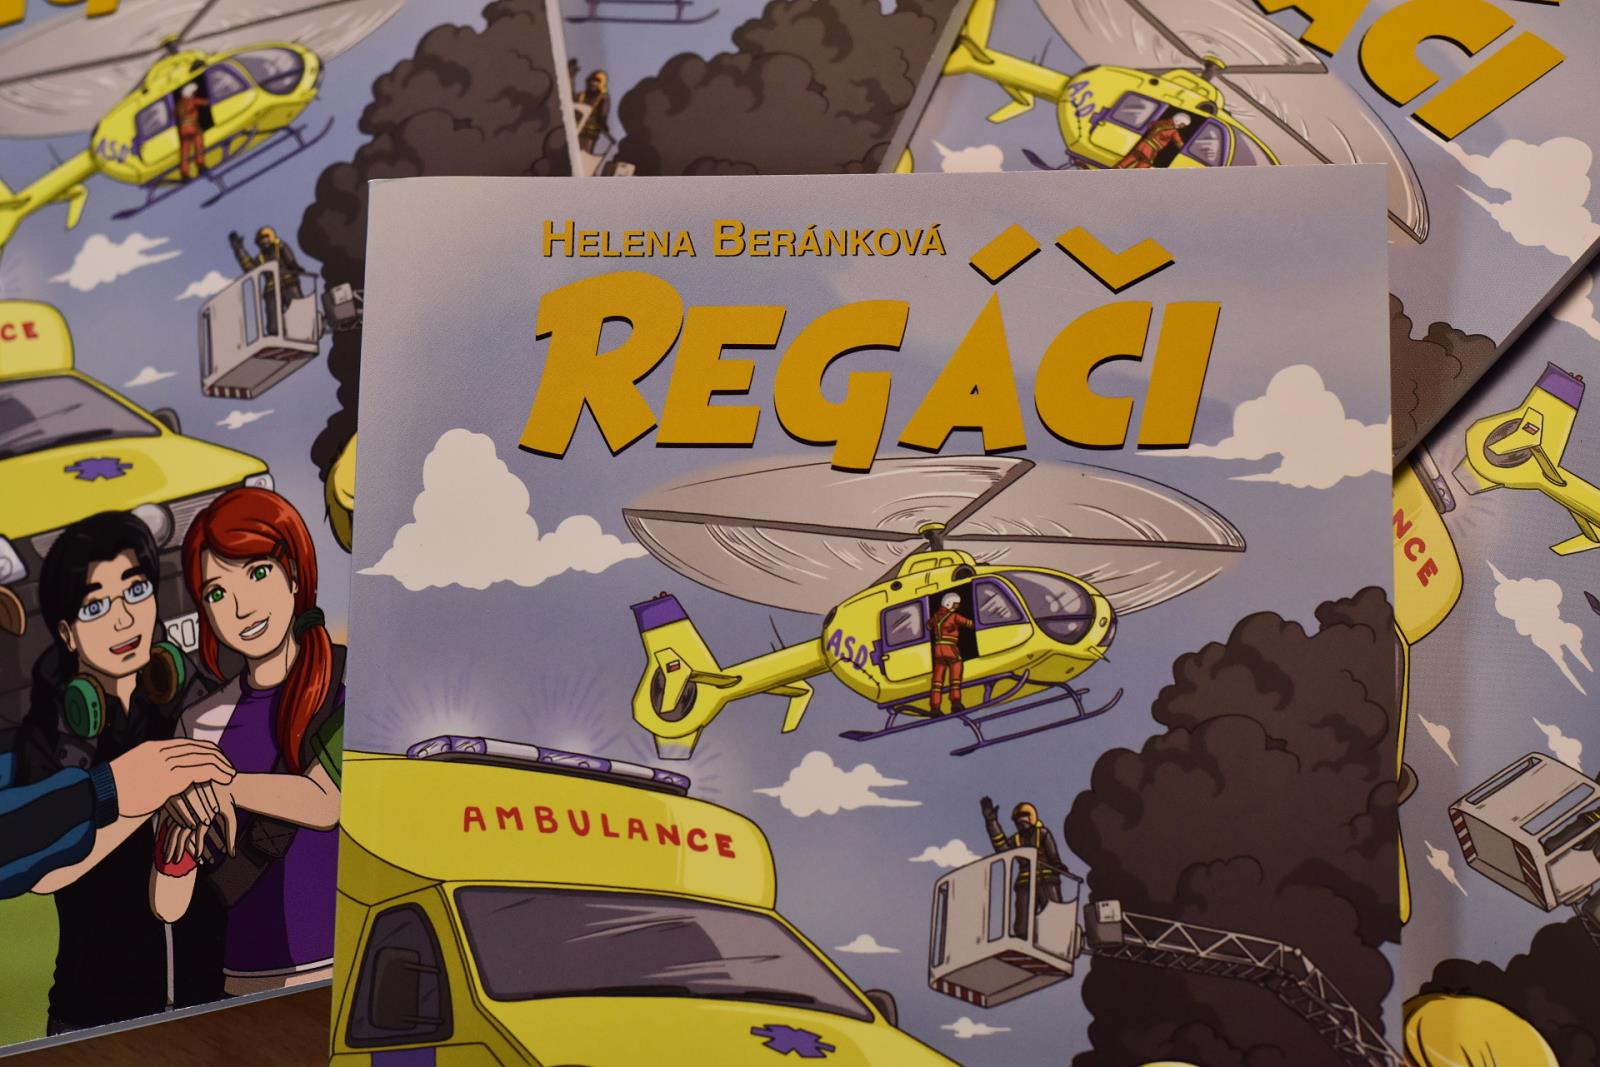 REGI Base I. darovala dětem hasičů 4 tisíce knih v hodnotě půl milionu korun DSC_0698.JPG